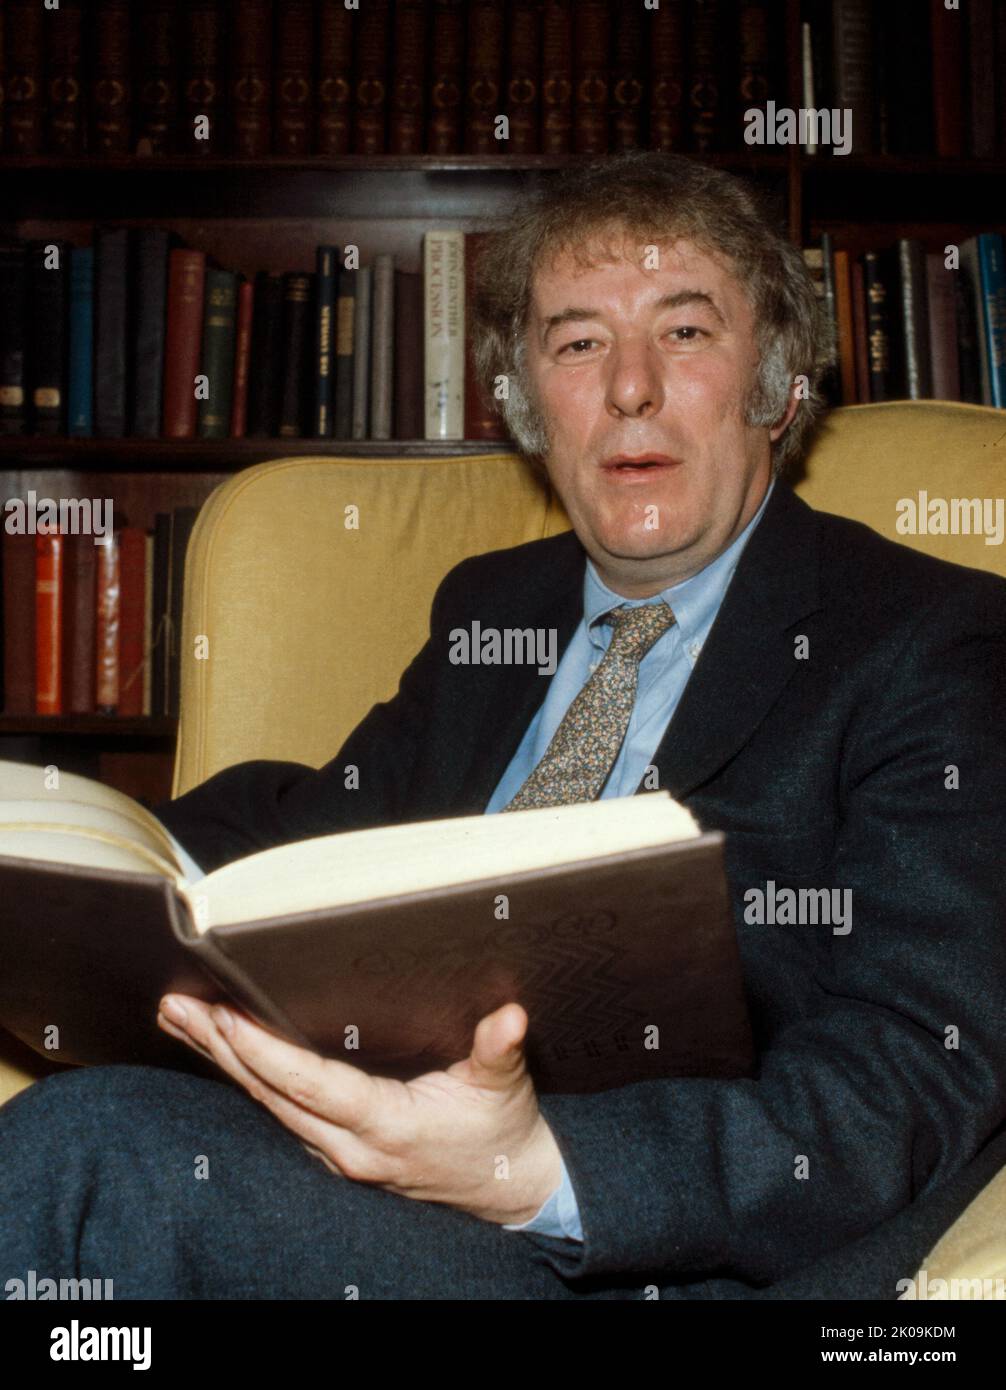 Seamus Heaney (1939 - 2013) Irischer Dichter, Dramatiker und Übersetzer. Er erhielt 1995 den Nobelpreis für Literatur. Zu seinen bekanntesten Werken gehört Death of a Naturalist (1966), sein erster großer veröffentlichter Band. Heaney war und ist zu seinen Lebzeiten einer der wichtigsten Verfasser der Lyrik in Irland. Stockfoto